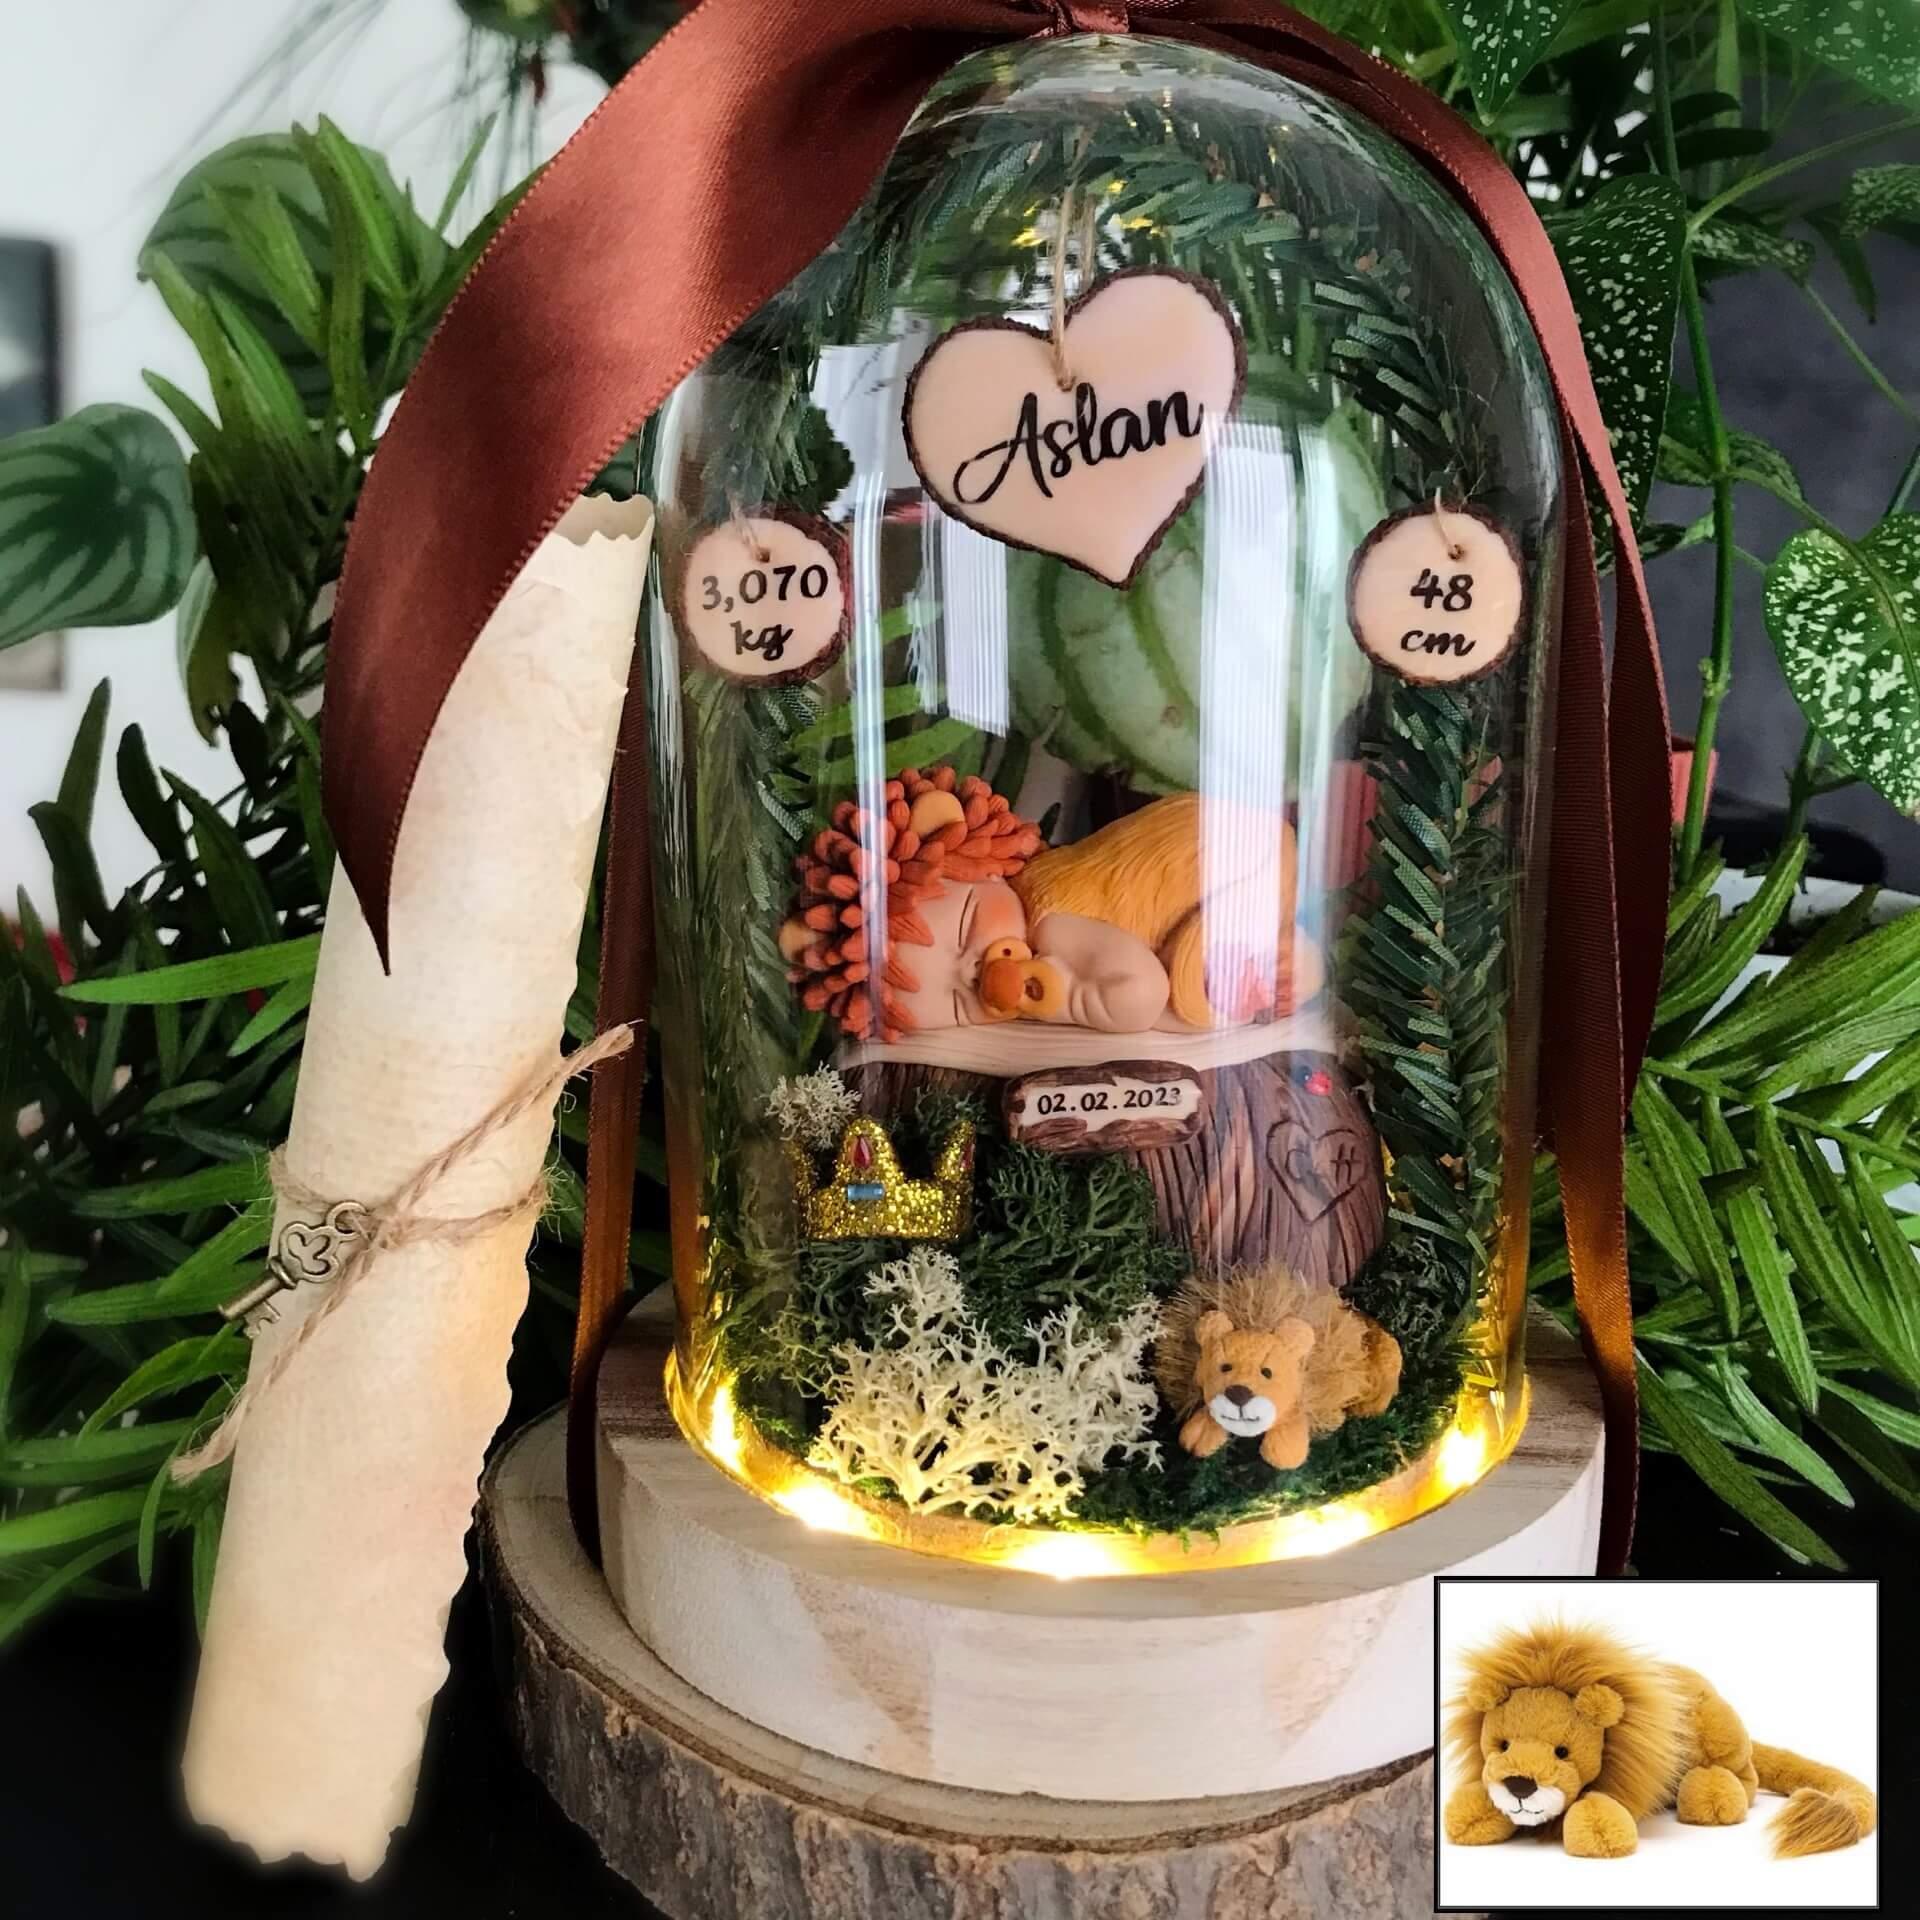 Regalo ideal para un recién nacido - Lámpara nocturna en forma de campana de vidrio iluminada - Tema león - Con el nombre del bebé